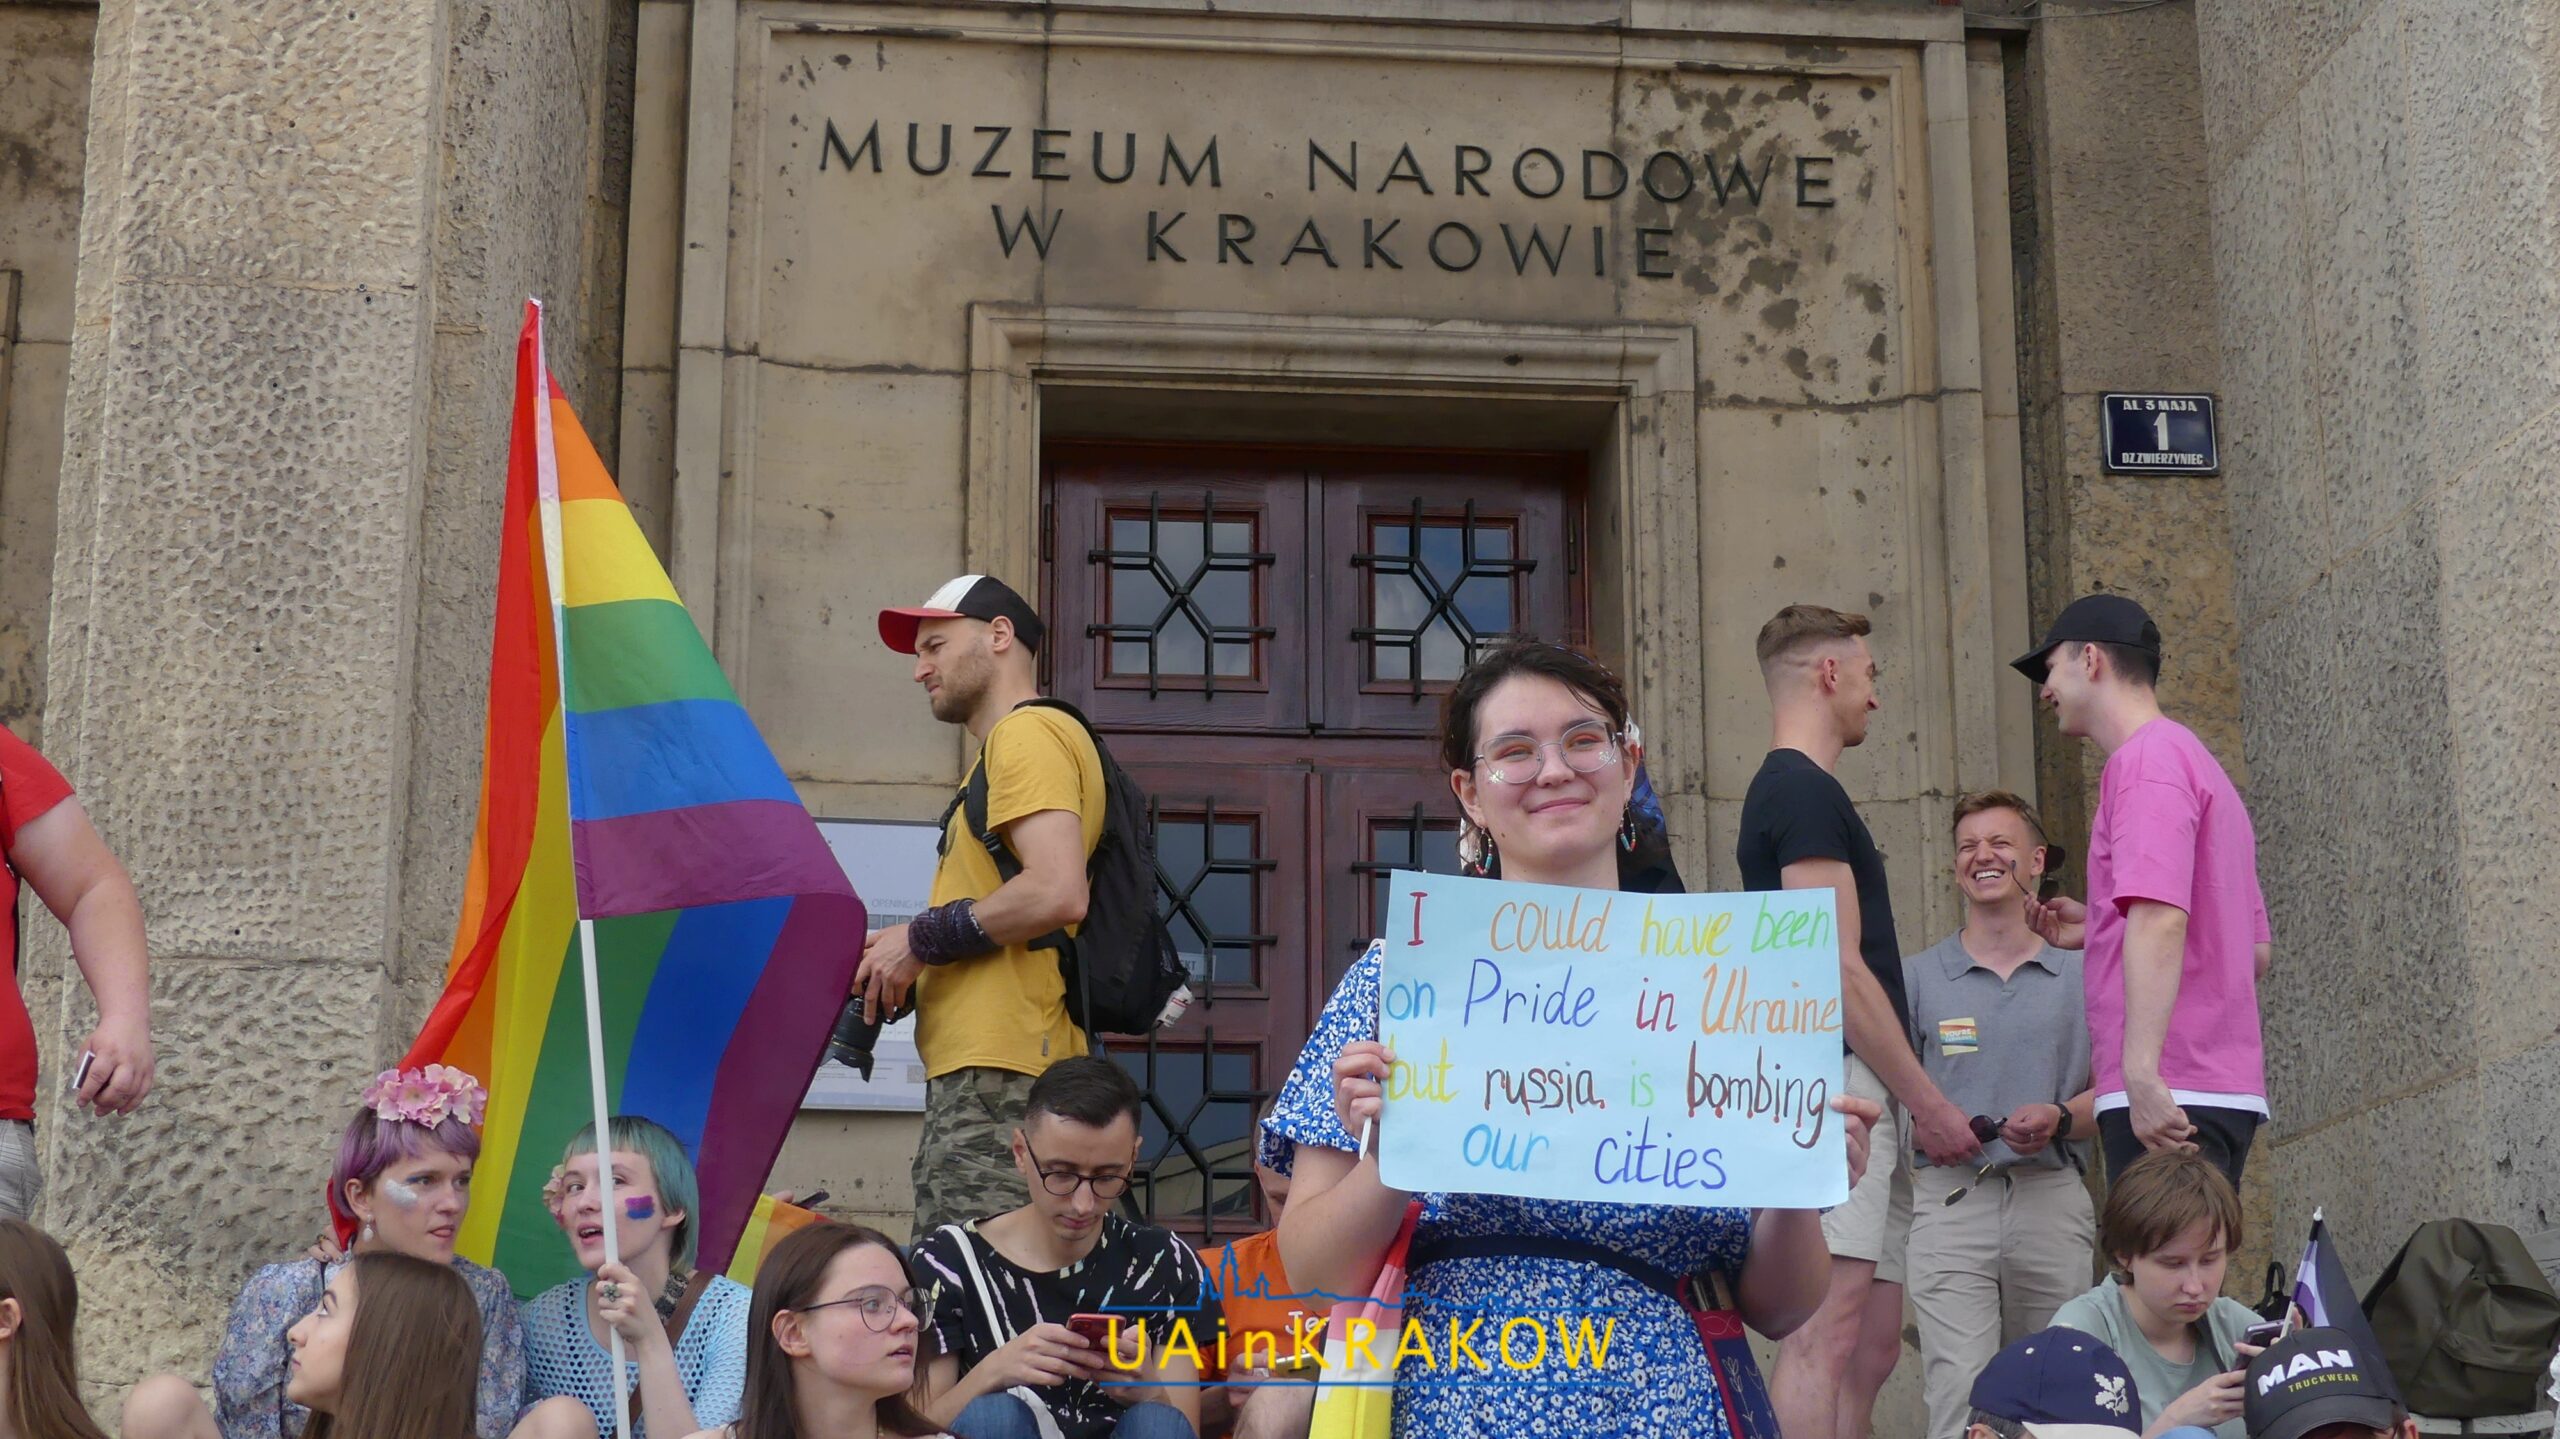 Кохання, рівність, толерантність: як пройшов Марш рівності в Кракові [ФОТО] 42 scaled